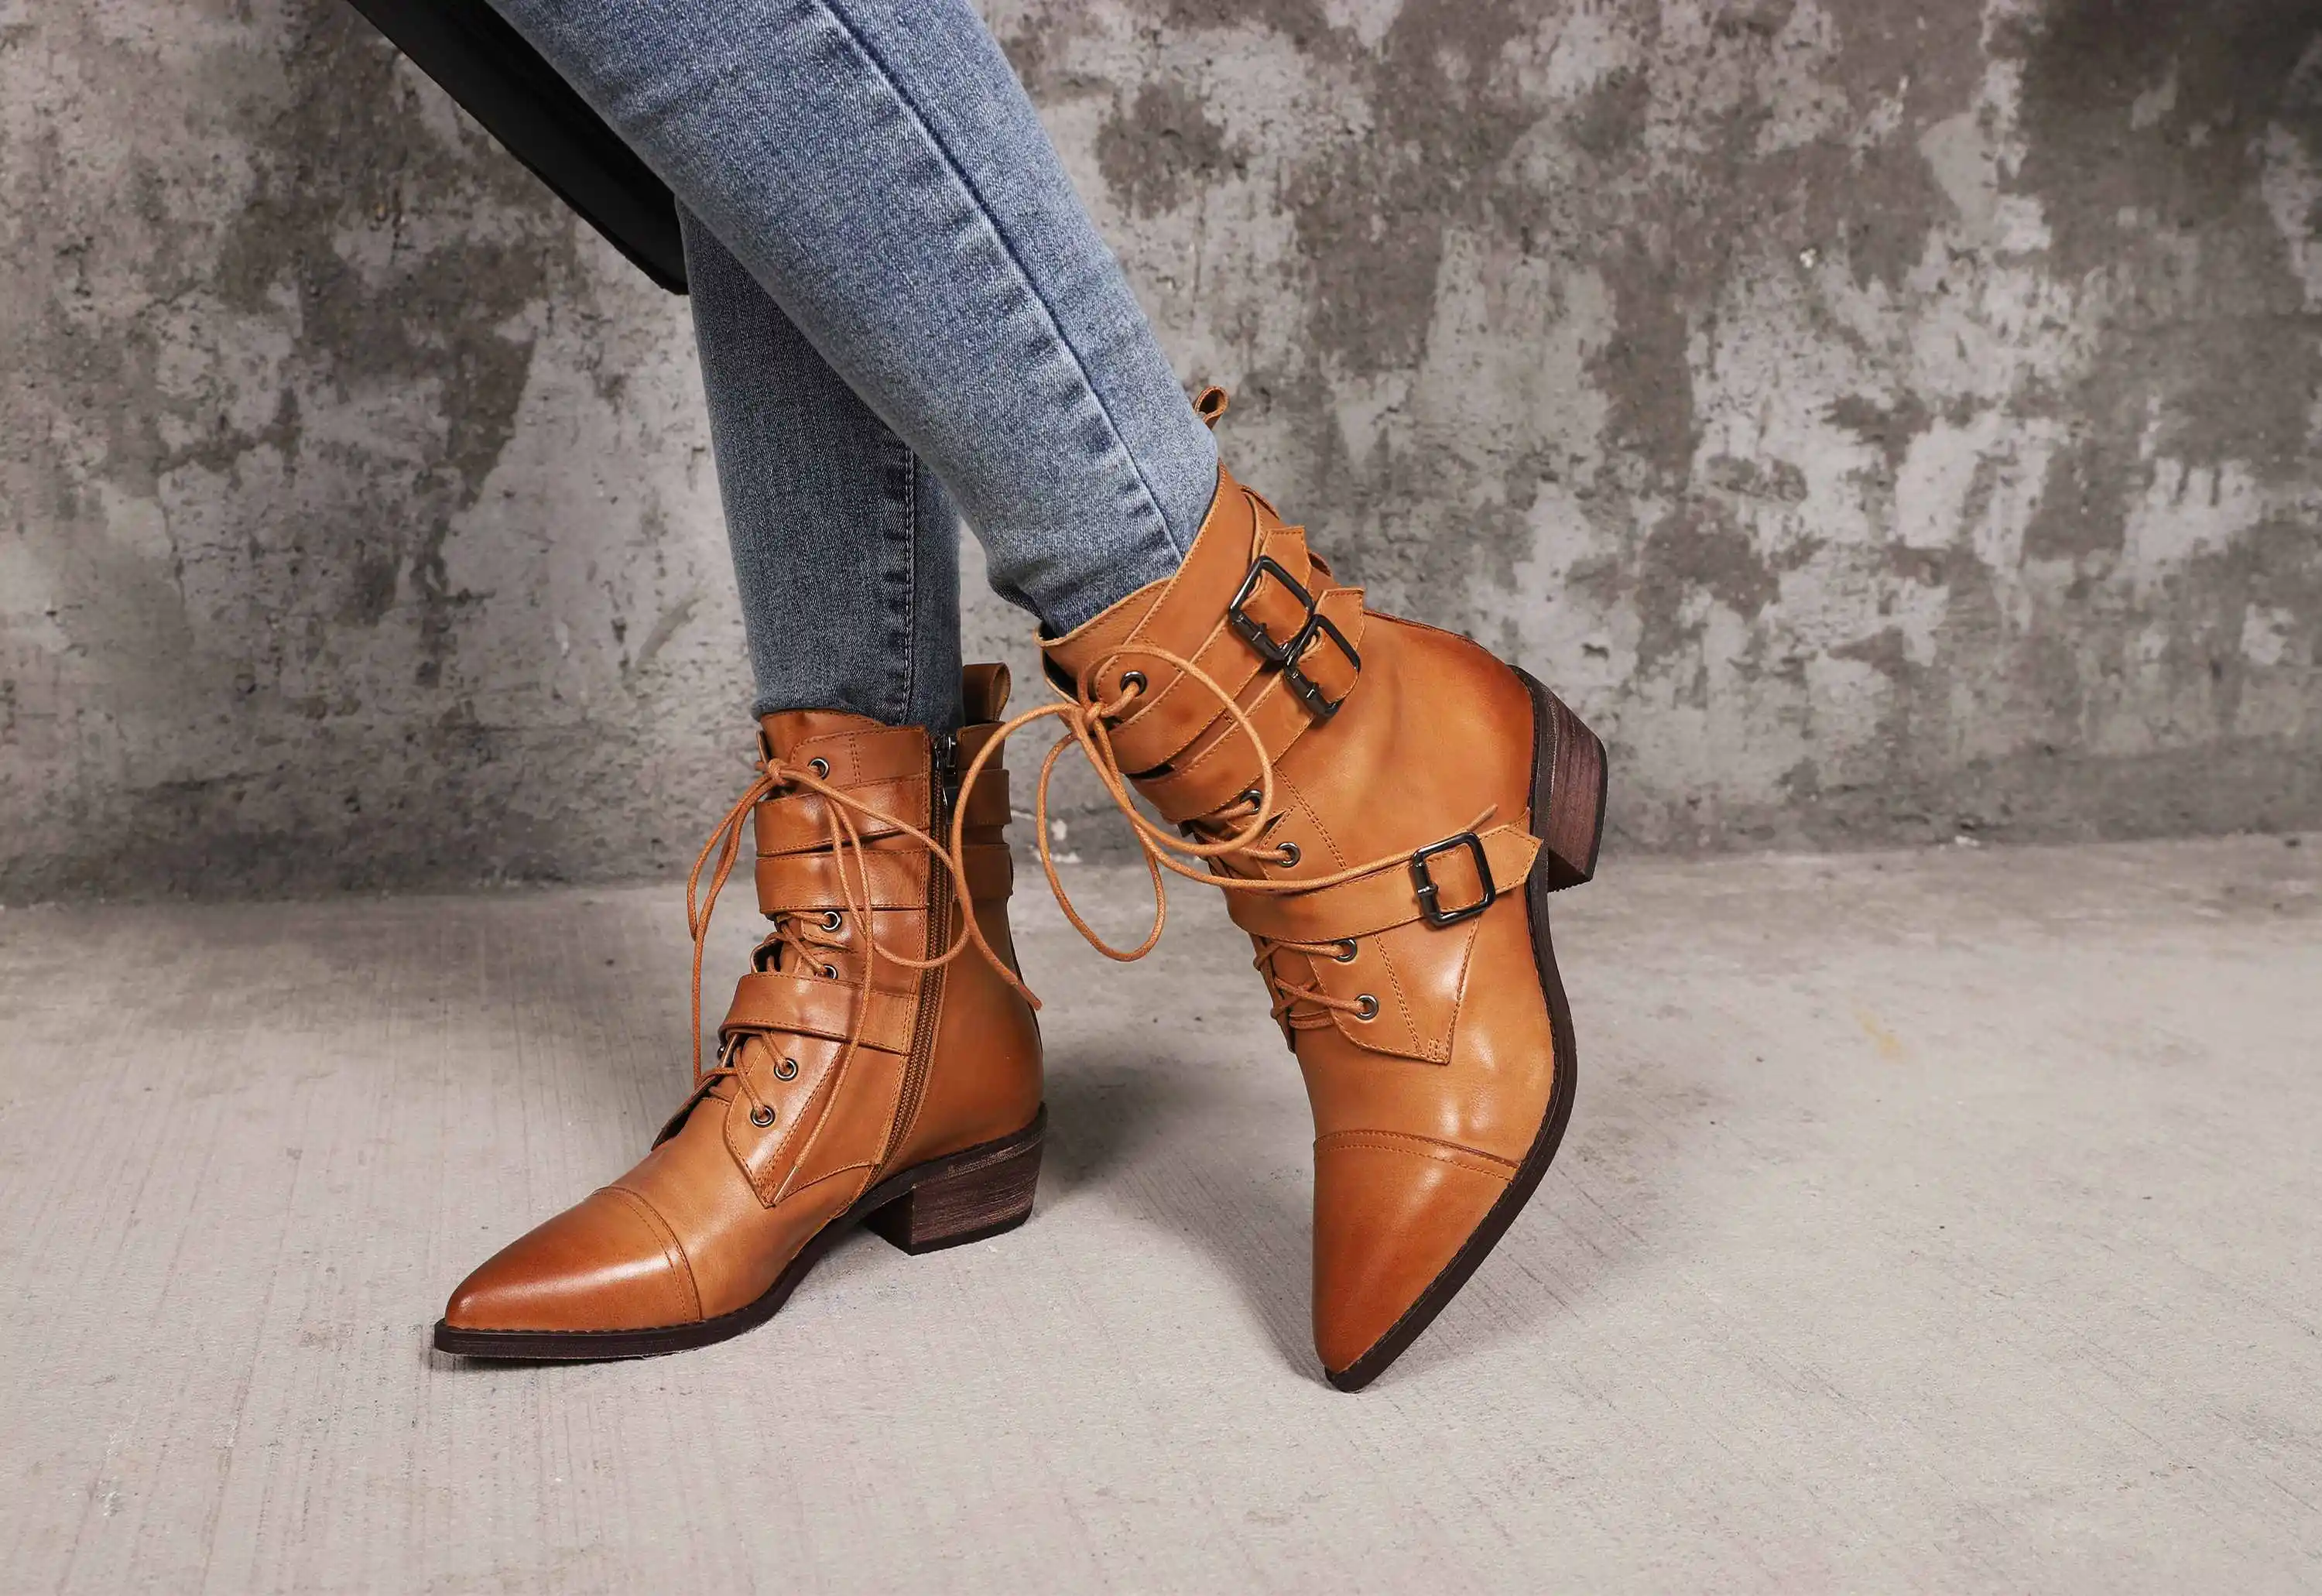 Lenkisen/Винтажные ботинки в байкерском стиле с острым носком; зимние женские ботильоны из натуральной кожи на среднем каблуке, с боковой молнией, на шнуровке, с пряжкой; L01